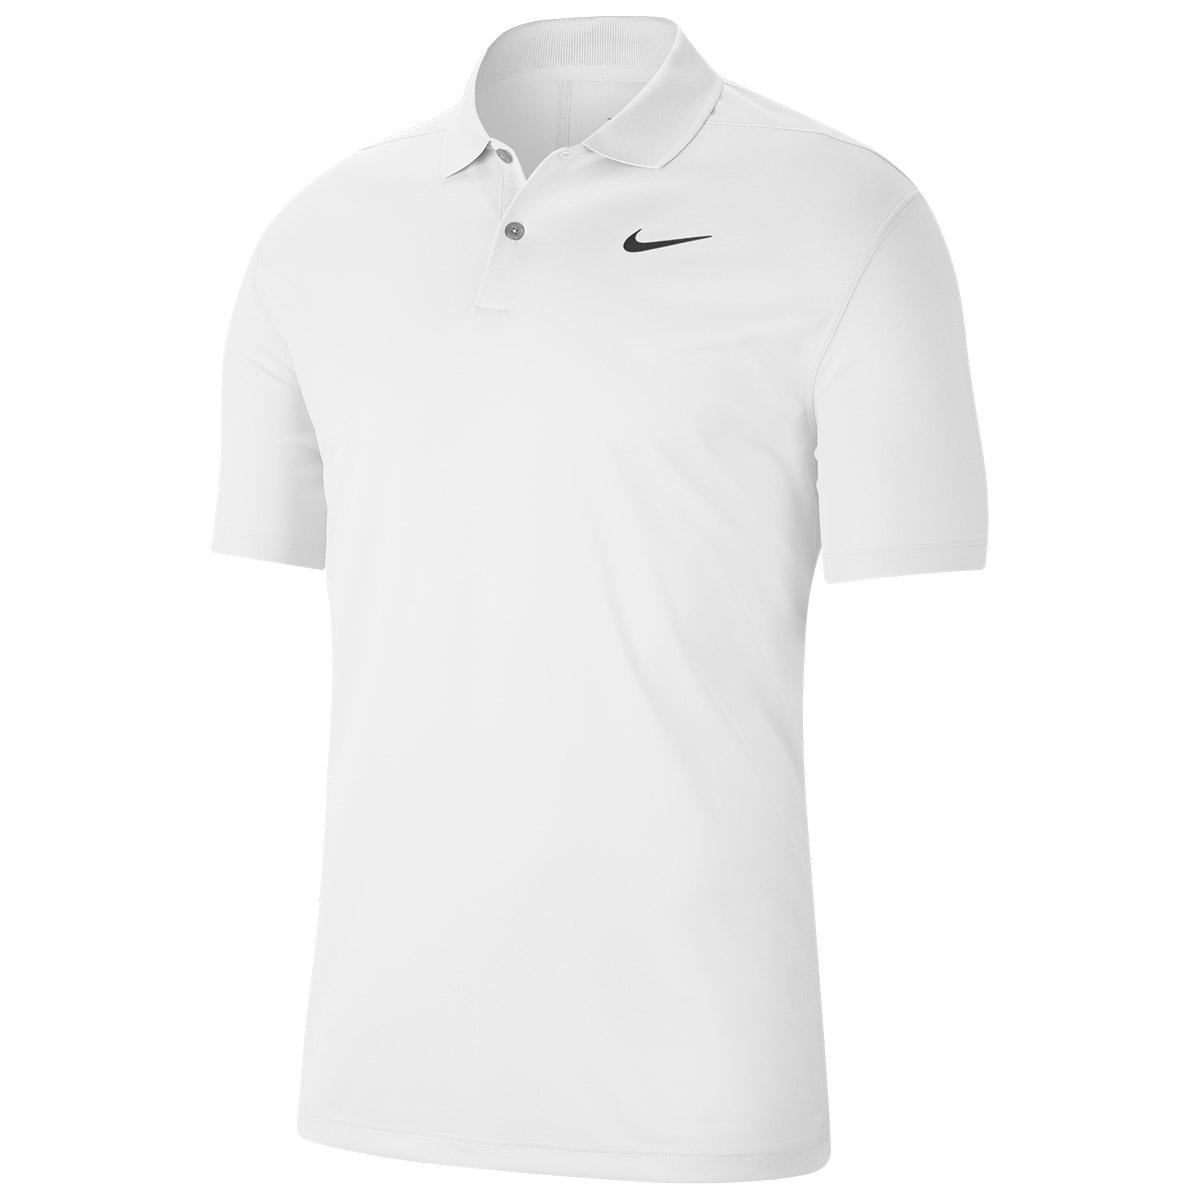 nike golf shirt sale \u003e Up to 67% OFF 